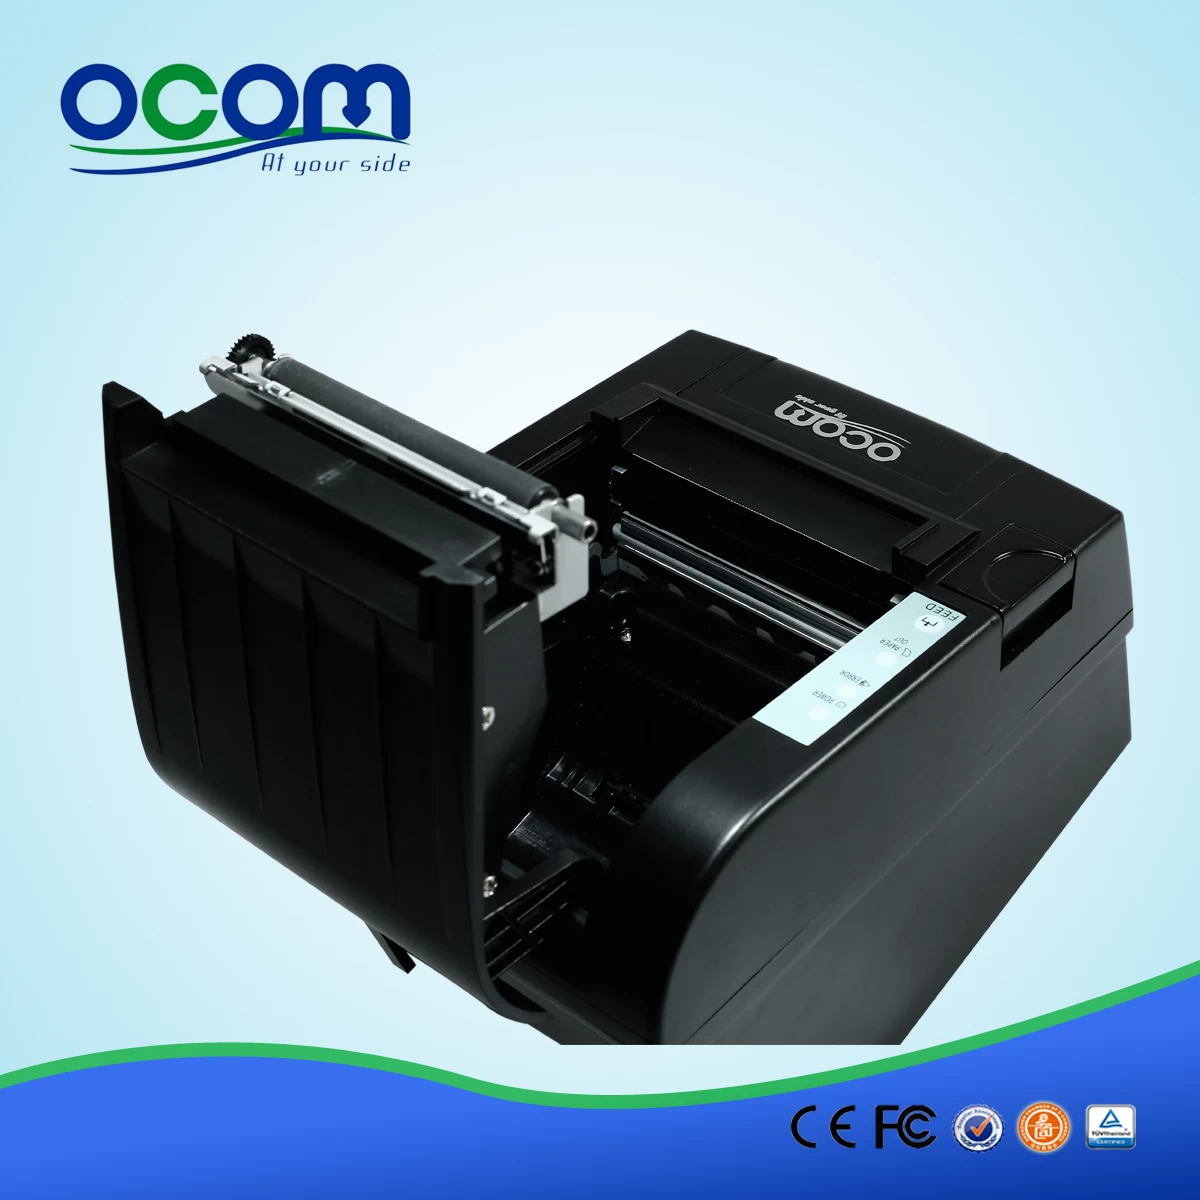 80mm high quality wireless wifi POS receipt printer-OCPP-806-W